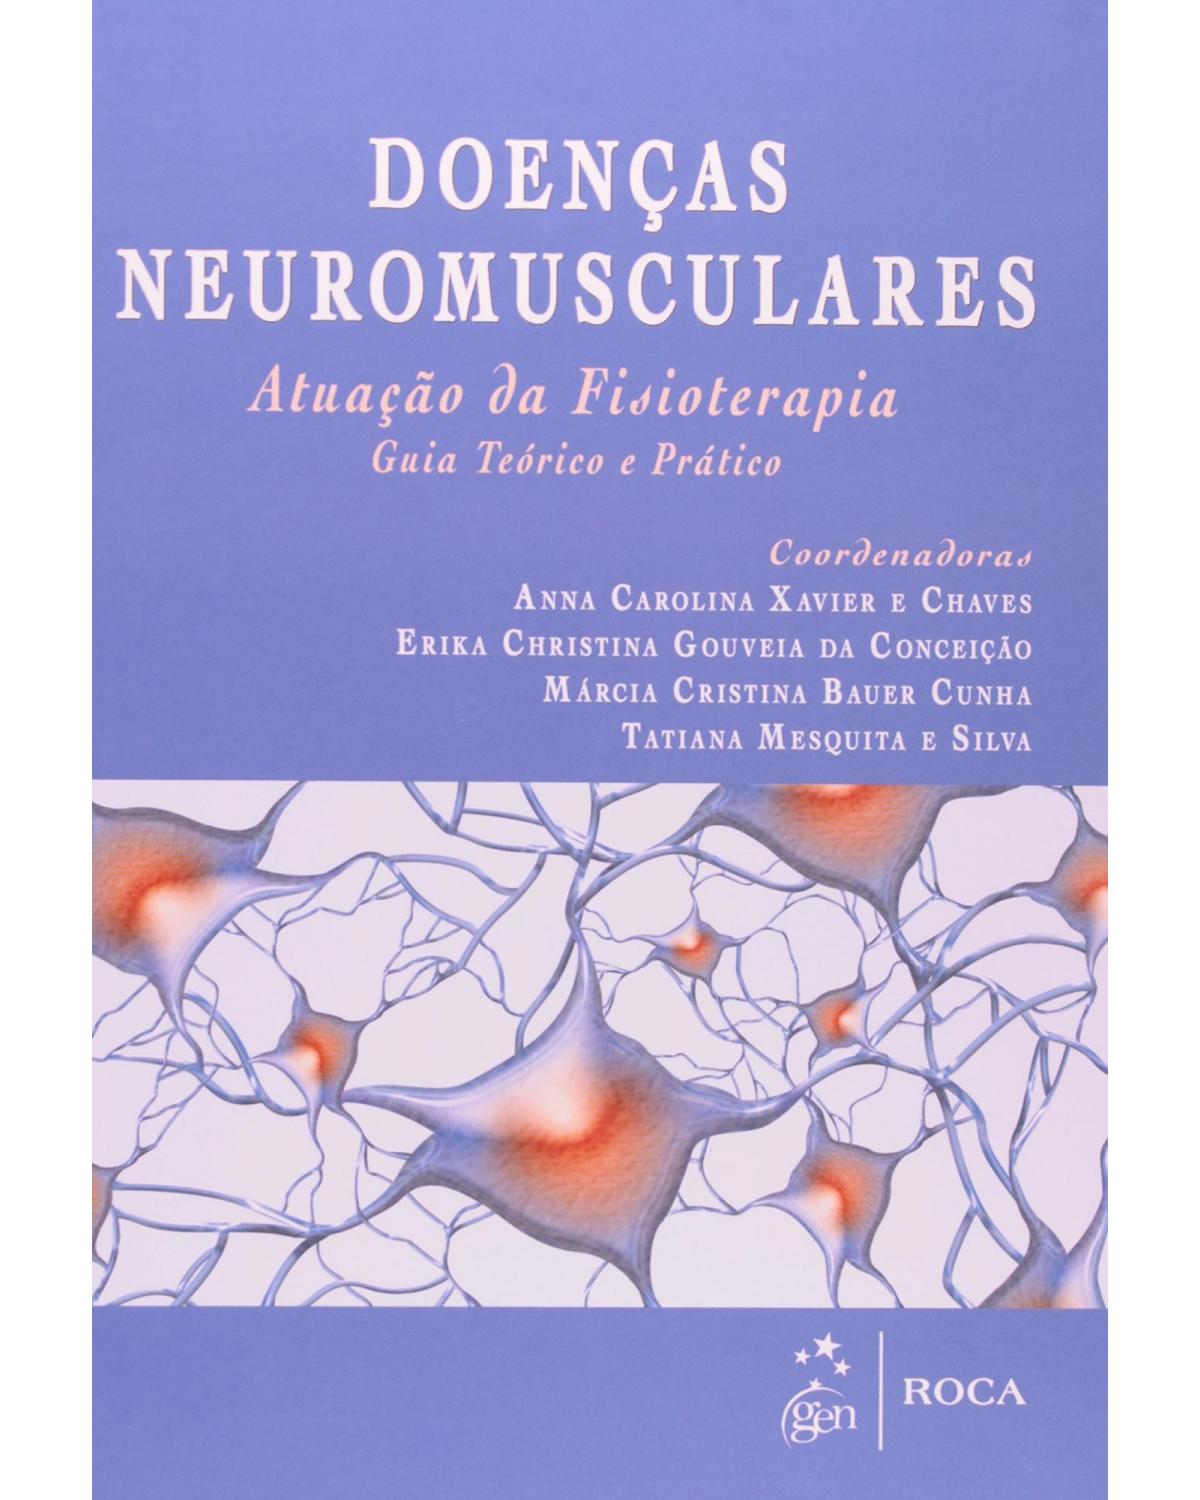 Doenças neuromusculares - Atuação da fisioterapia - Guia teórico e prático - 1ª Edição | 2012